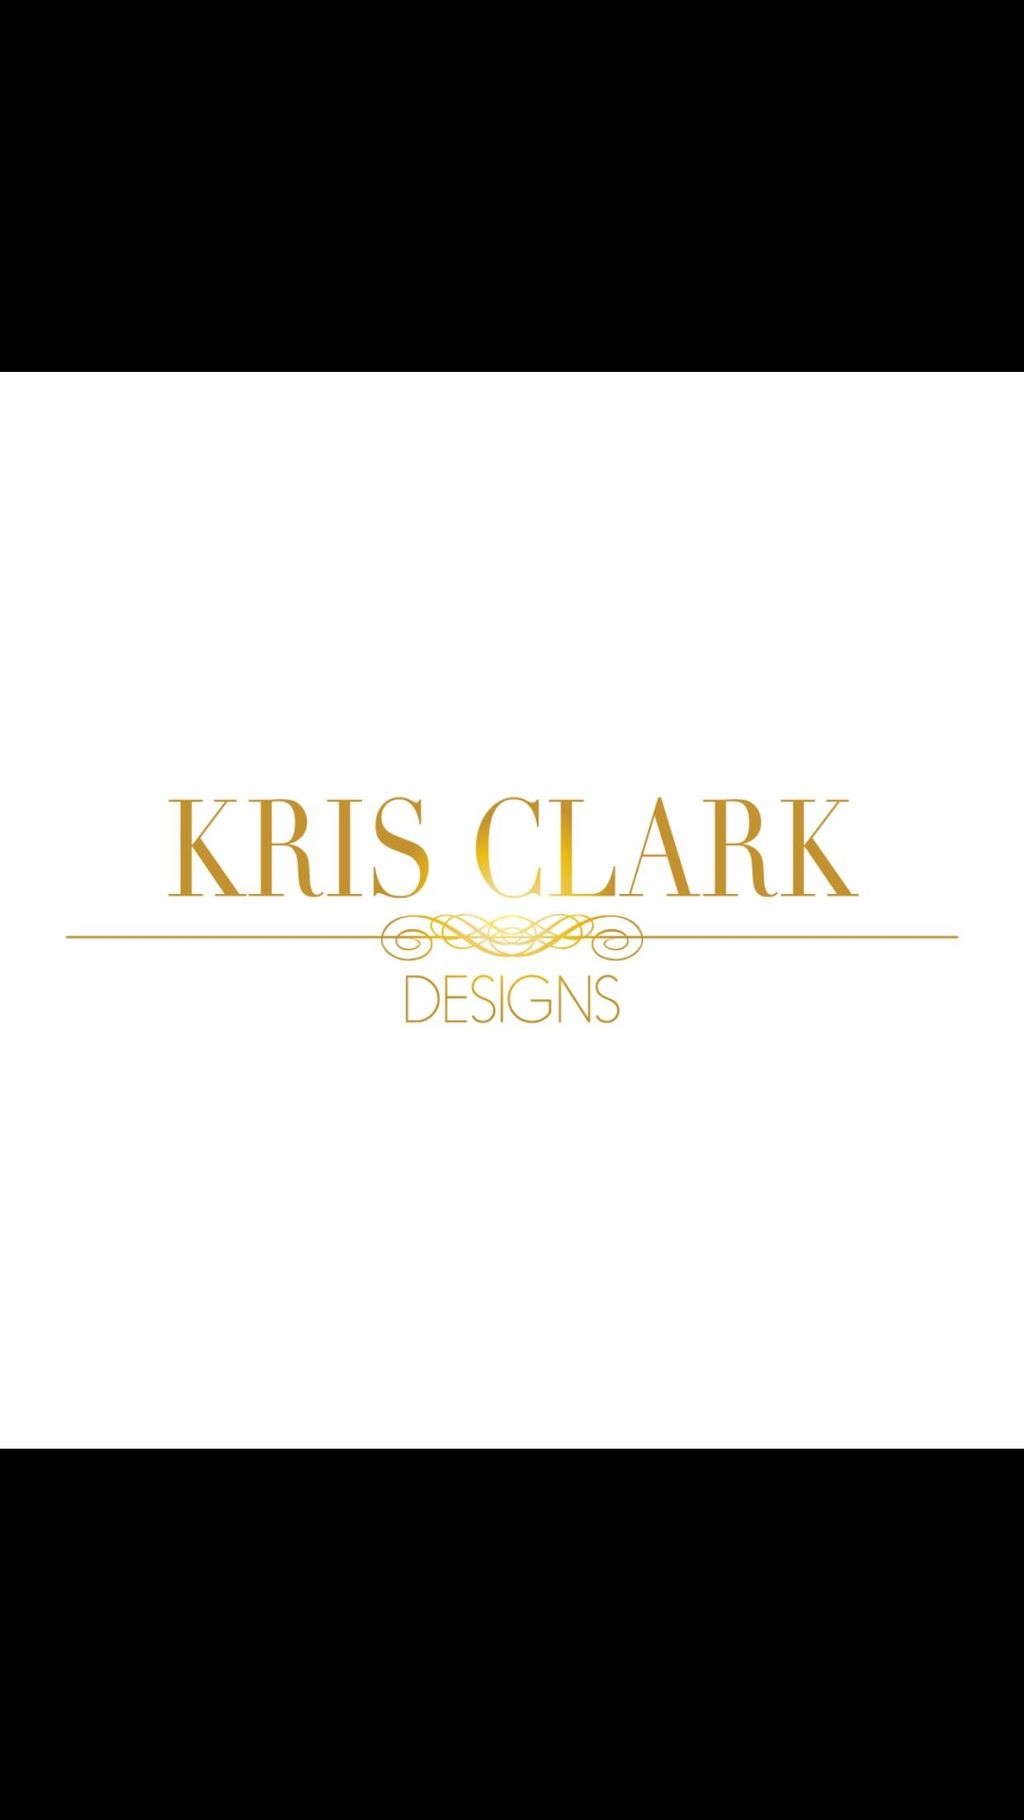 Kris Clark Designs